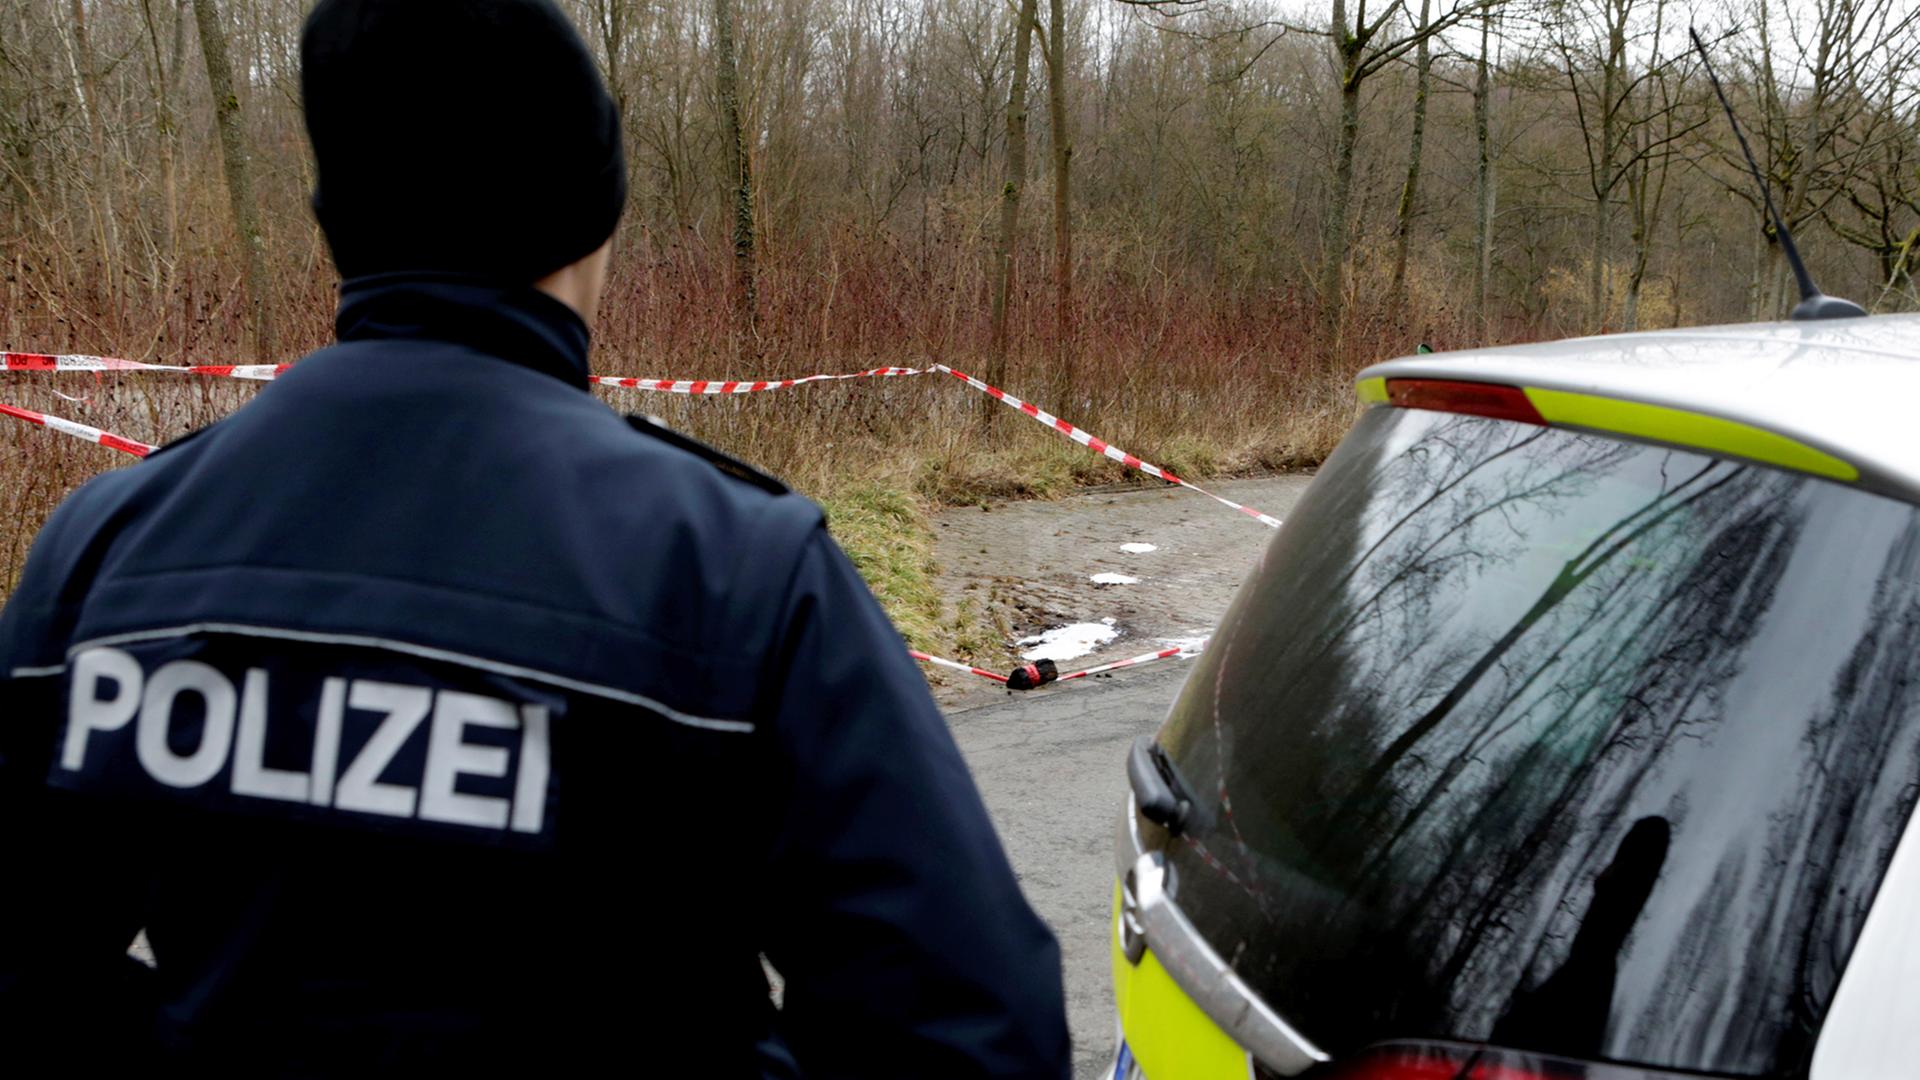 Die Polizei sichert am 28.01.2015 in Darmstadt den Fundort der Leiche einer 19-jährigen jungen Frau. Nach dem gewaltsamen Tod der Frau hat die Polizei vier Familienangehörige festgenommen. Dabei handelt es sich um Vater, Mutter, Onkel und Tante des Opfers, wie Polizei und Staatsanwaltschaft am Donnerstag mitteilten.